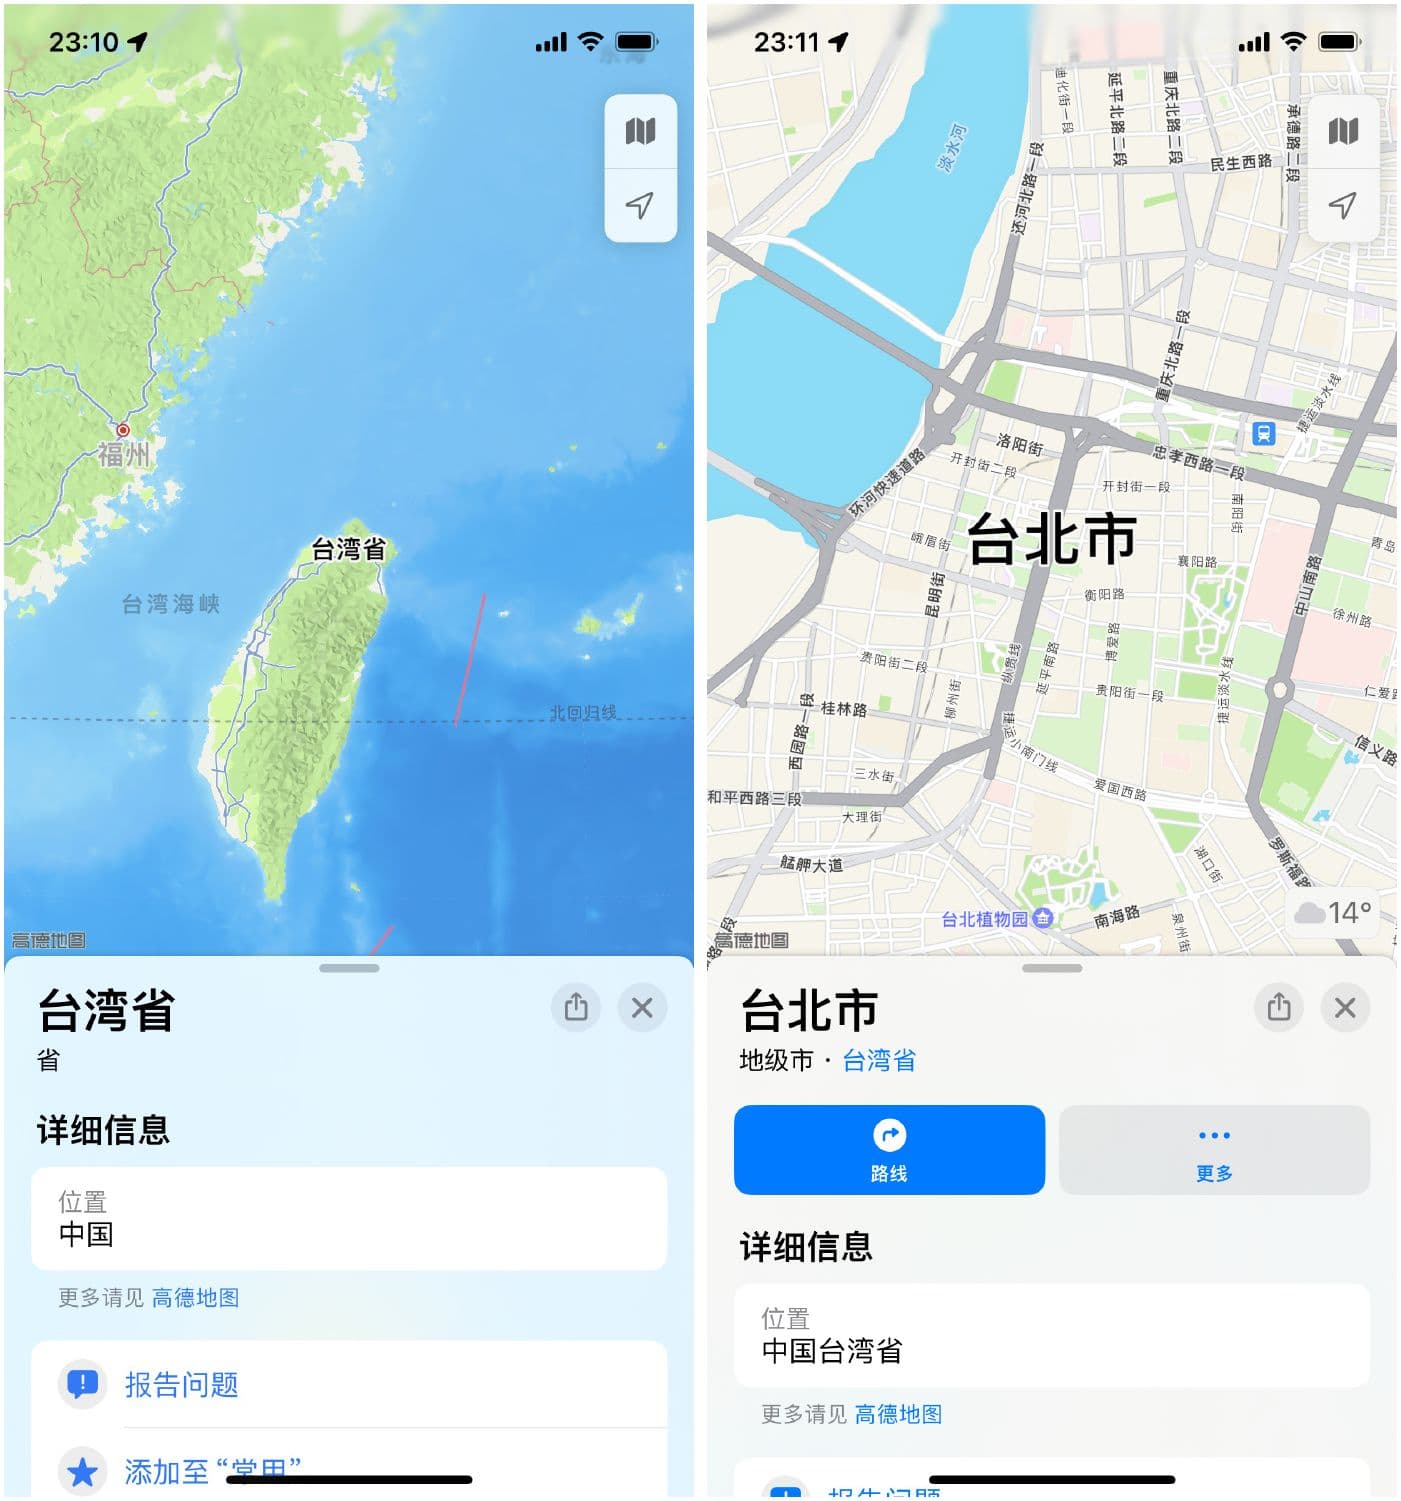 連同蘋果地圖也全面改成中國台灣省